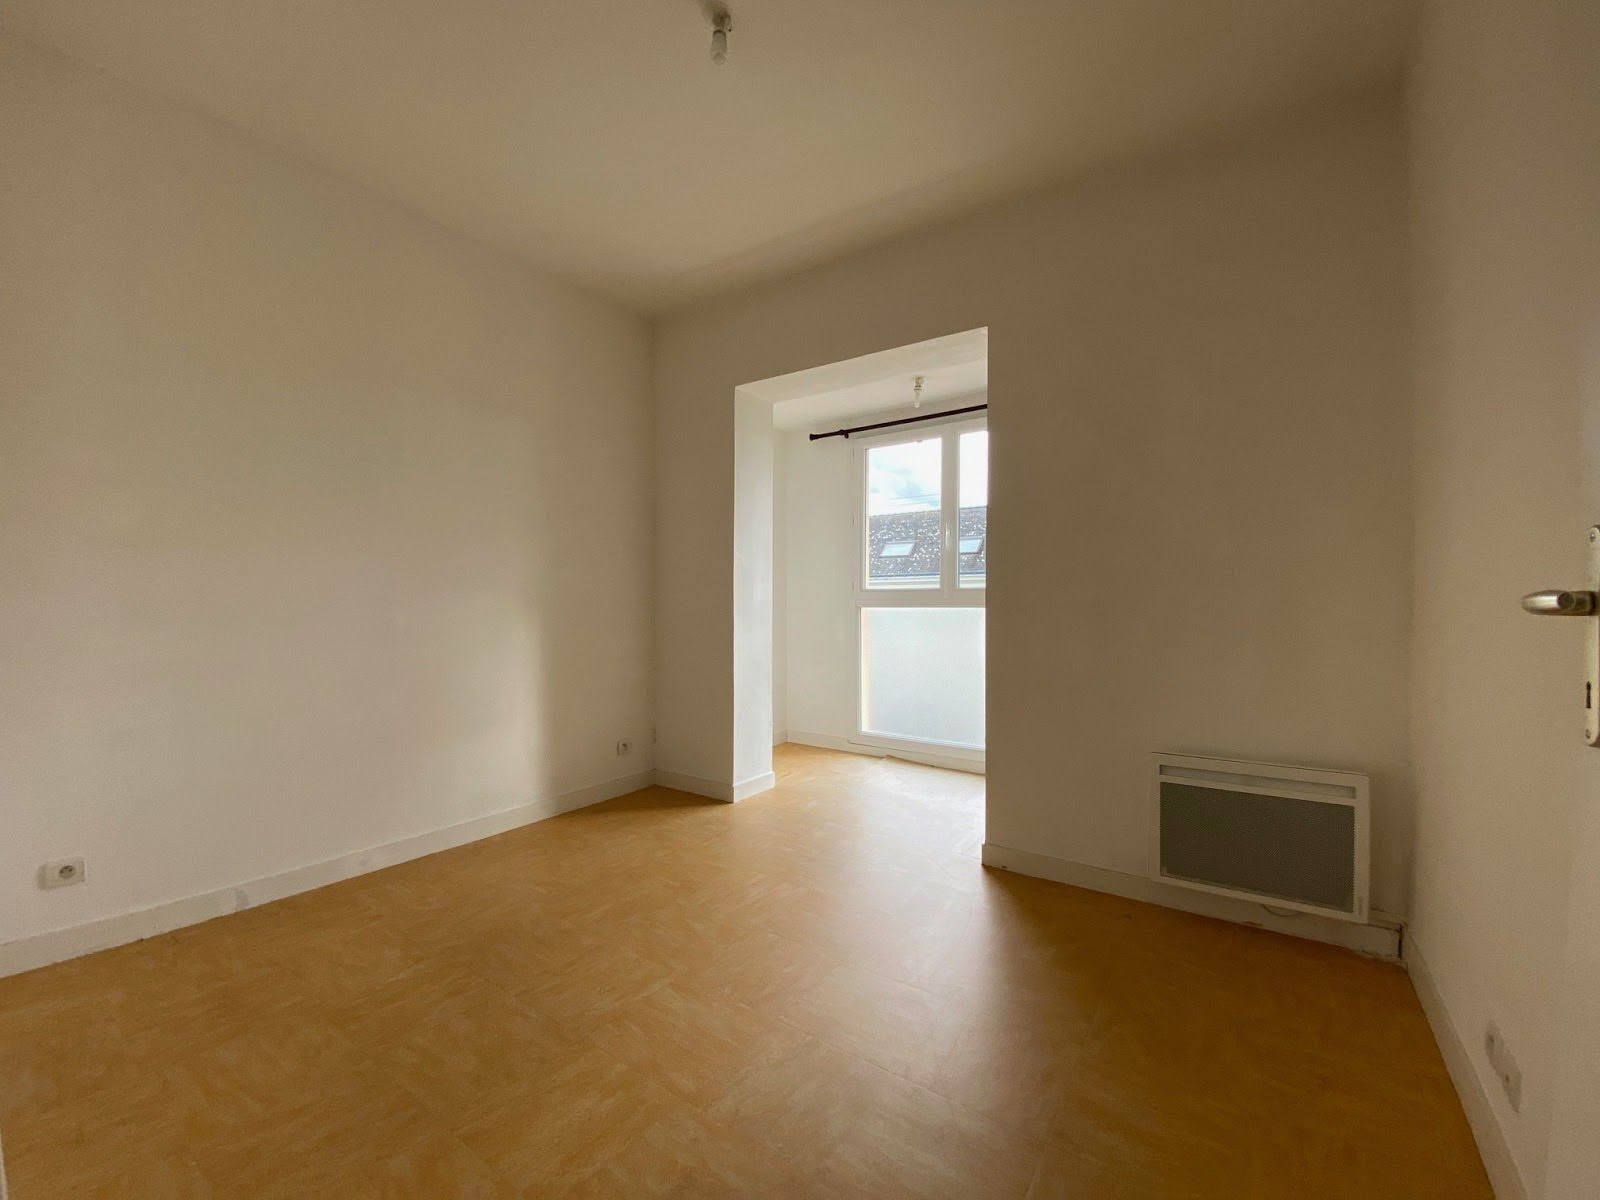 Location appartement 4 pièces 65,17 m2